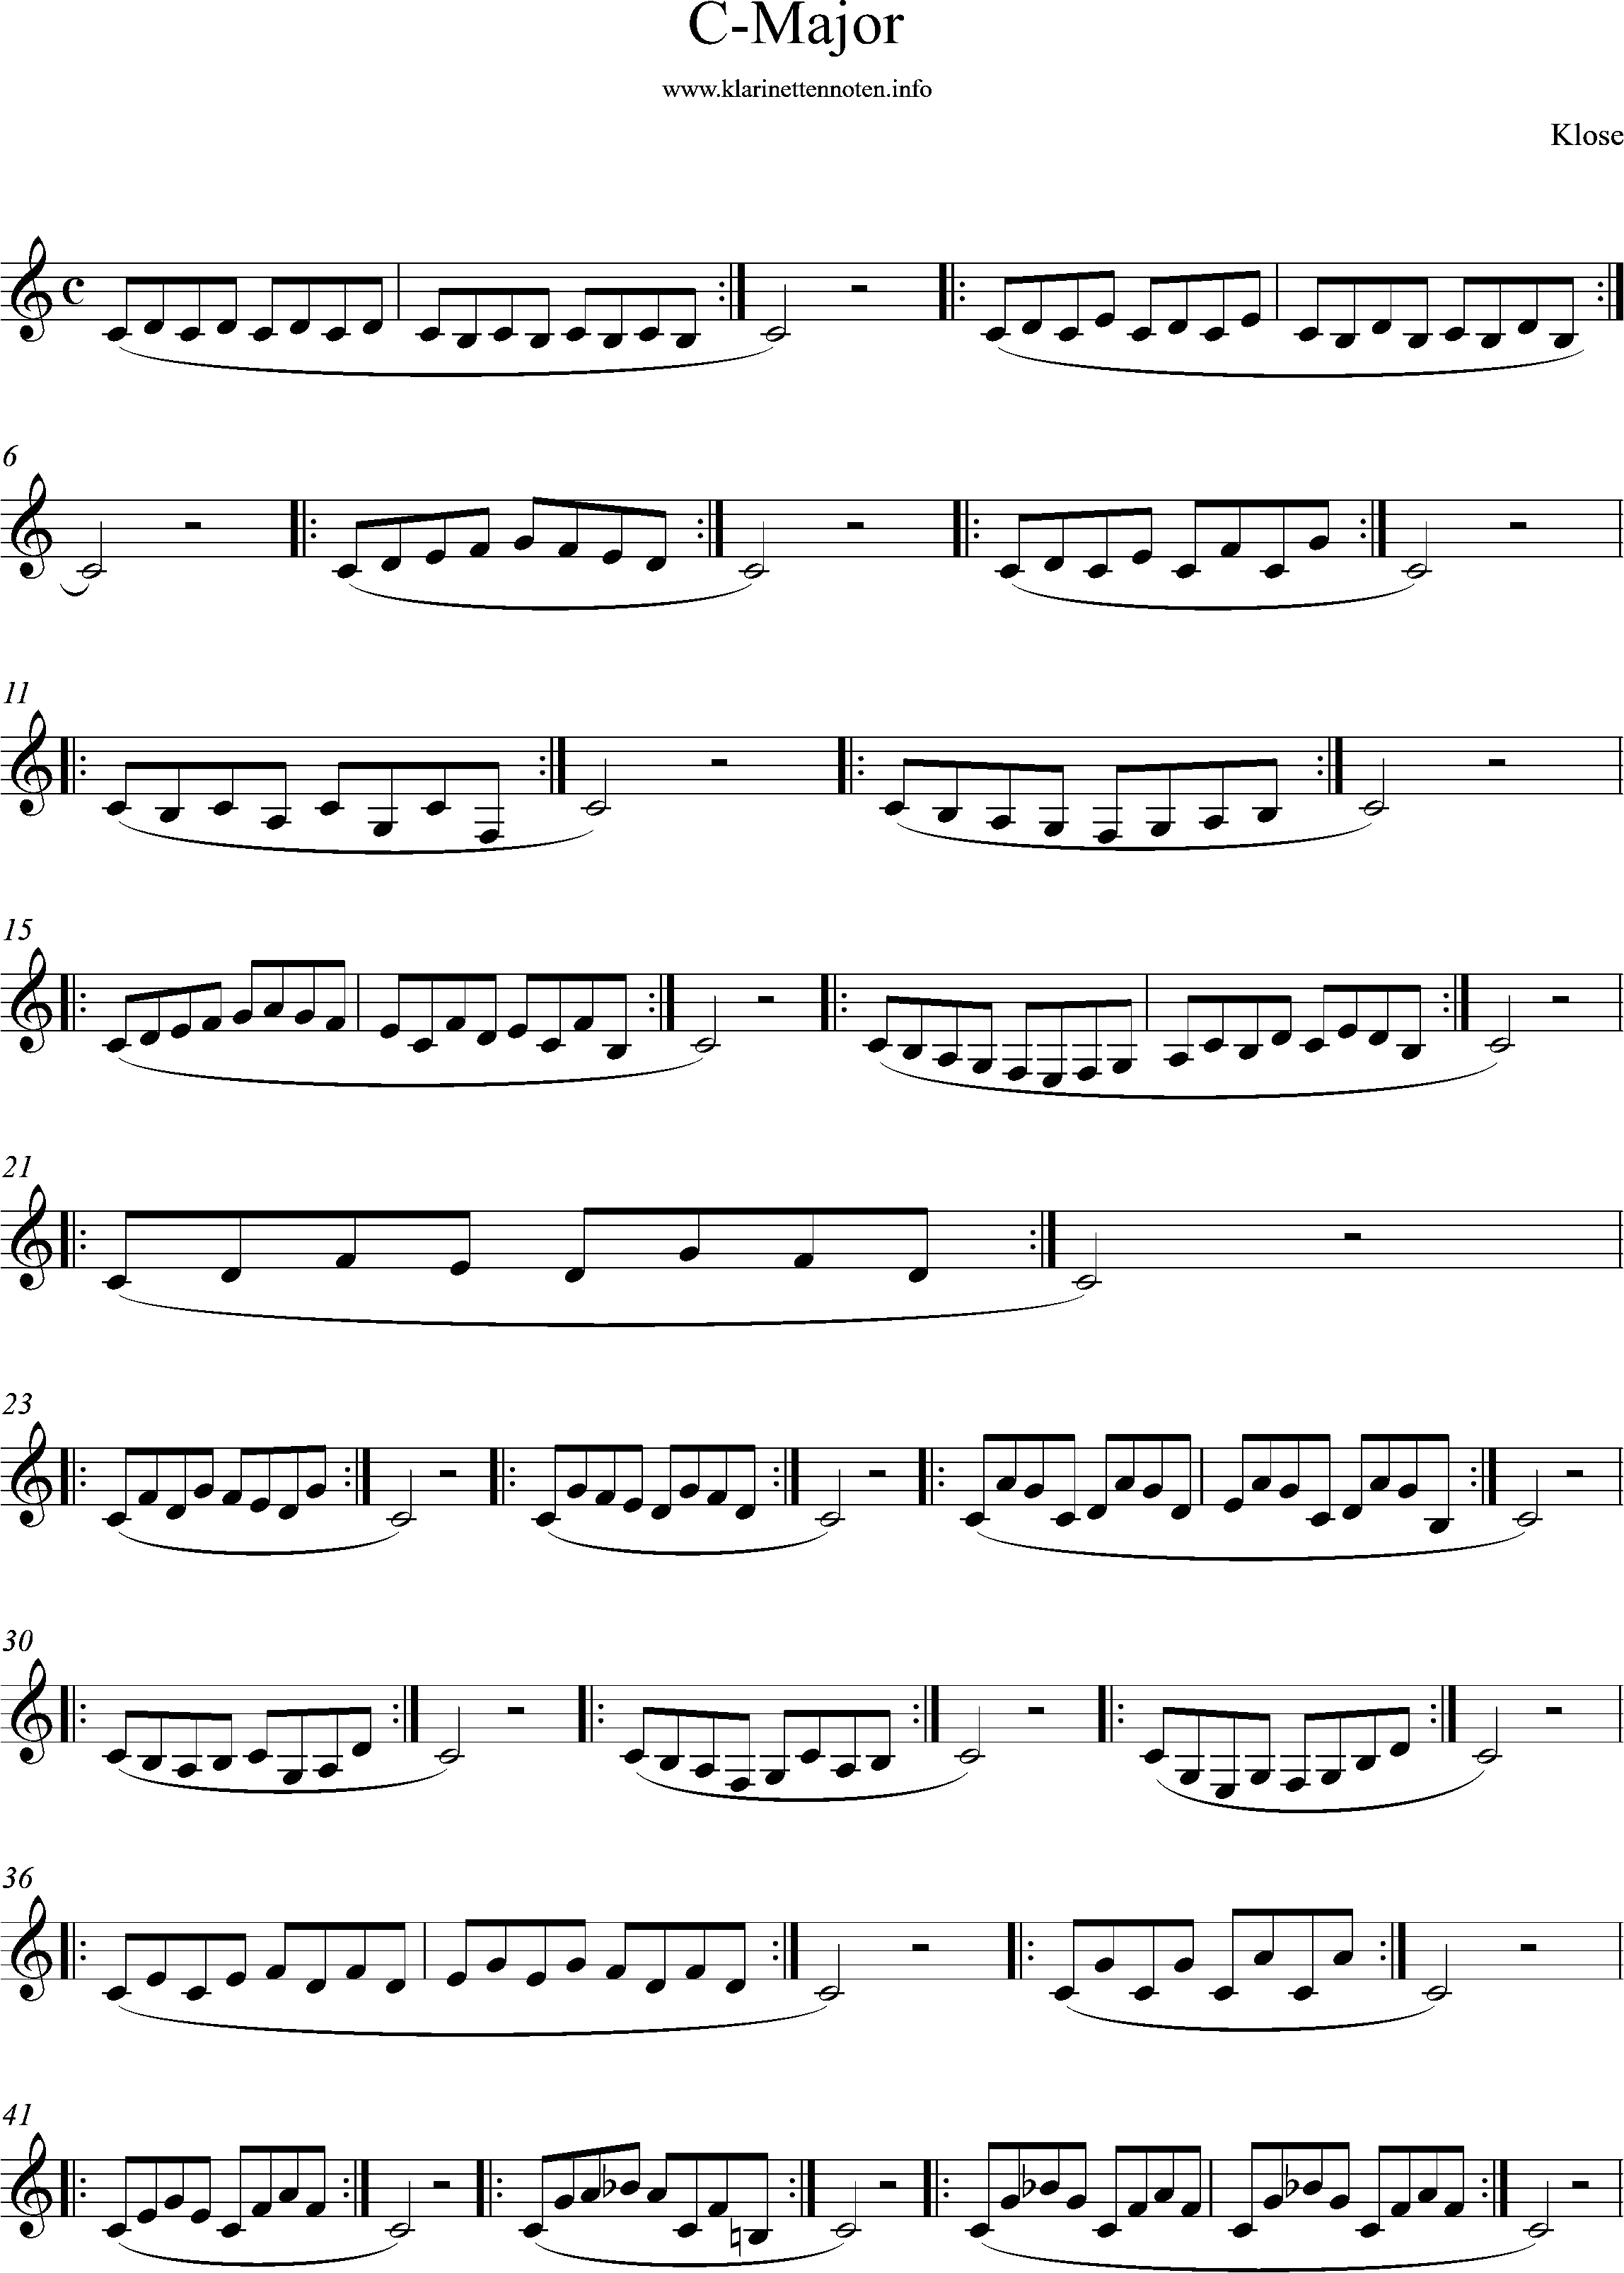 clarinet, klose, c_major scales